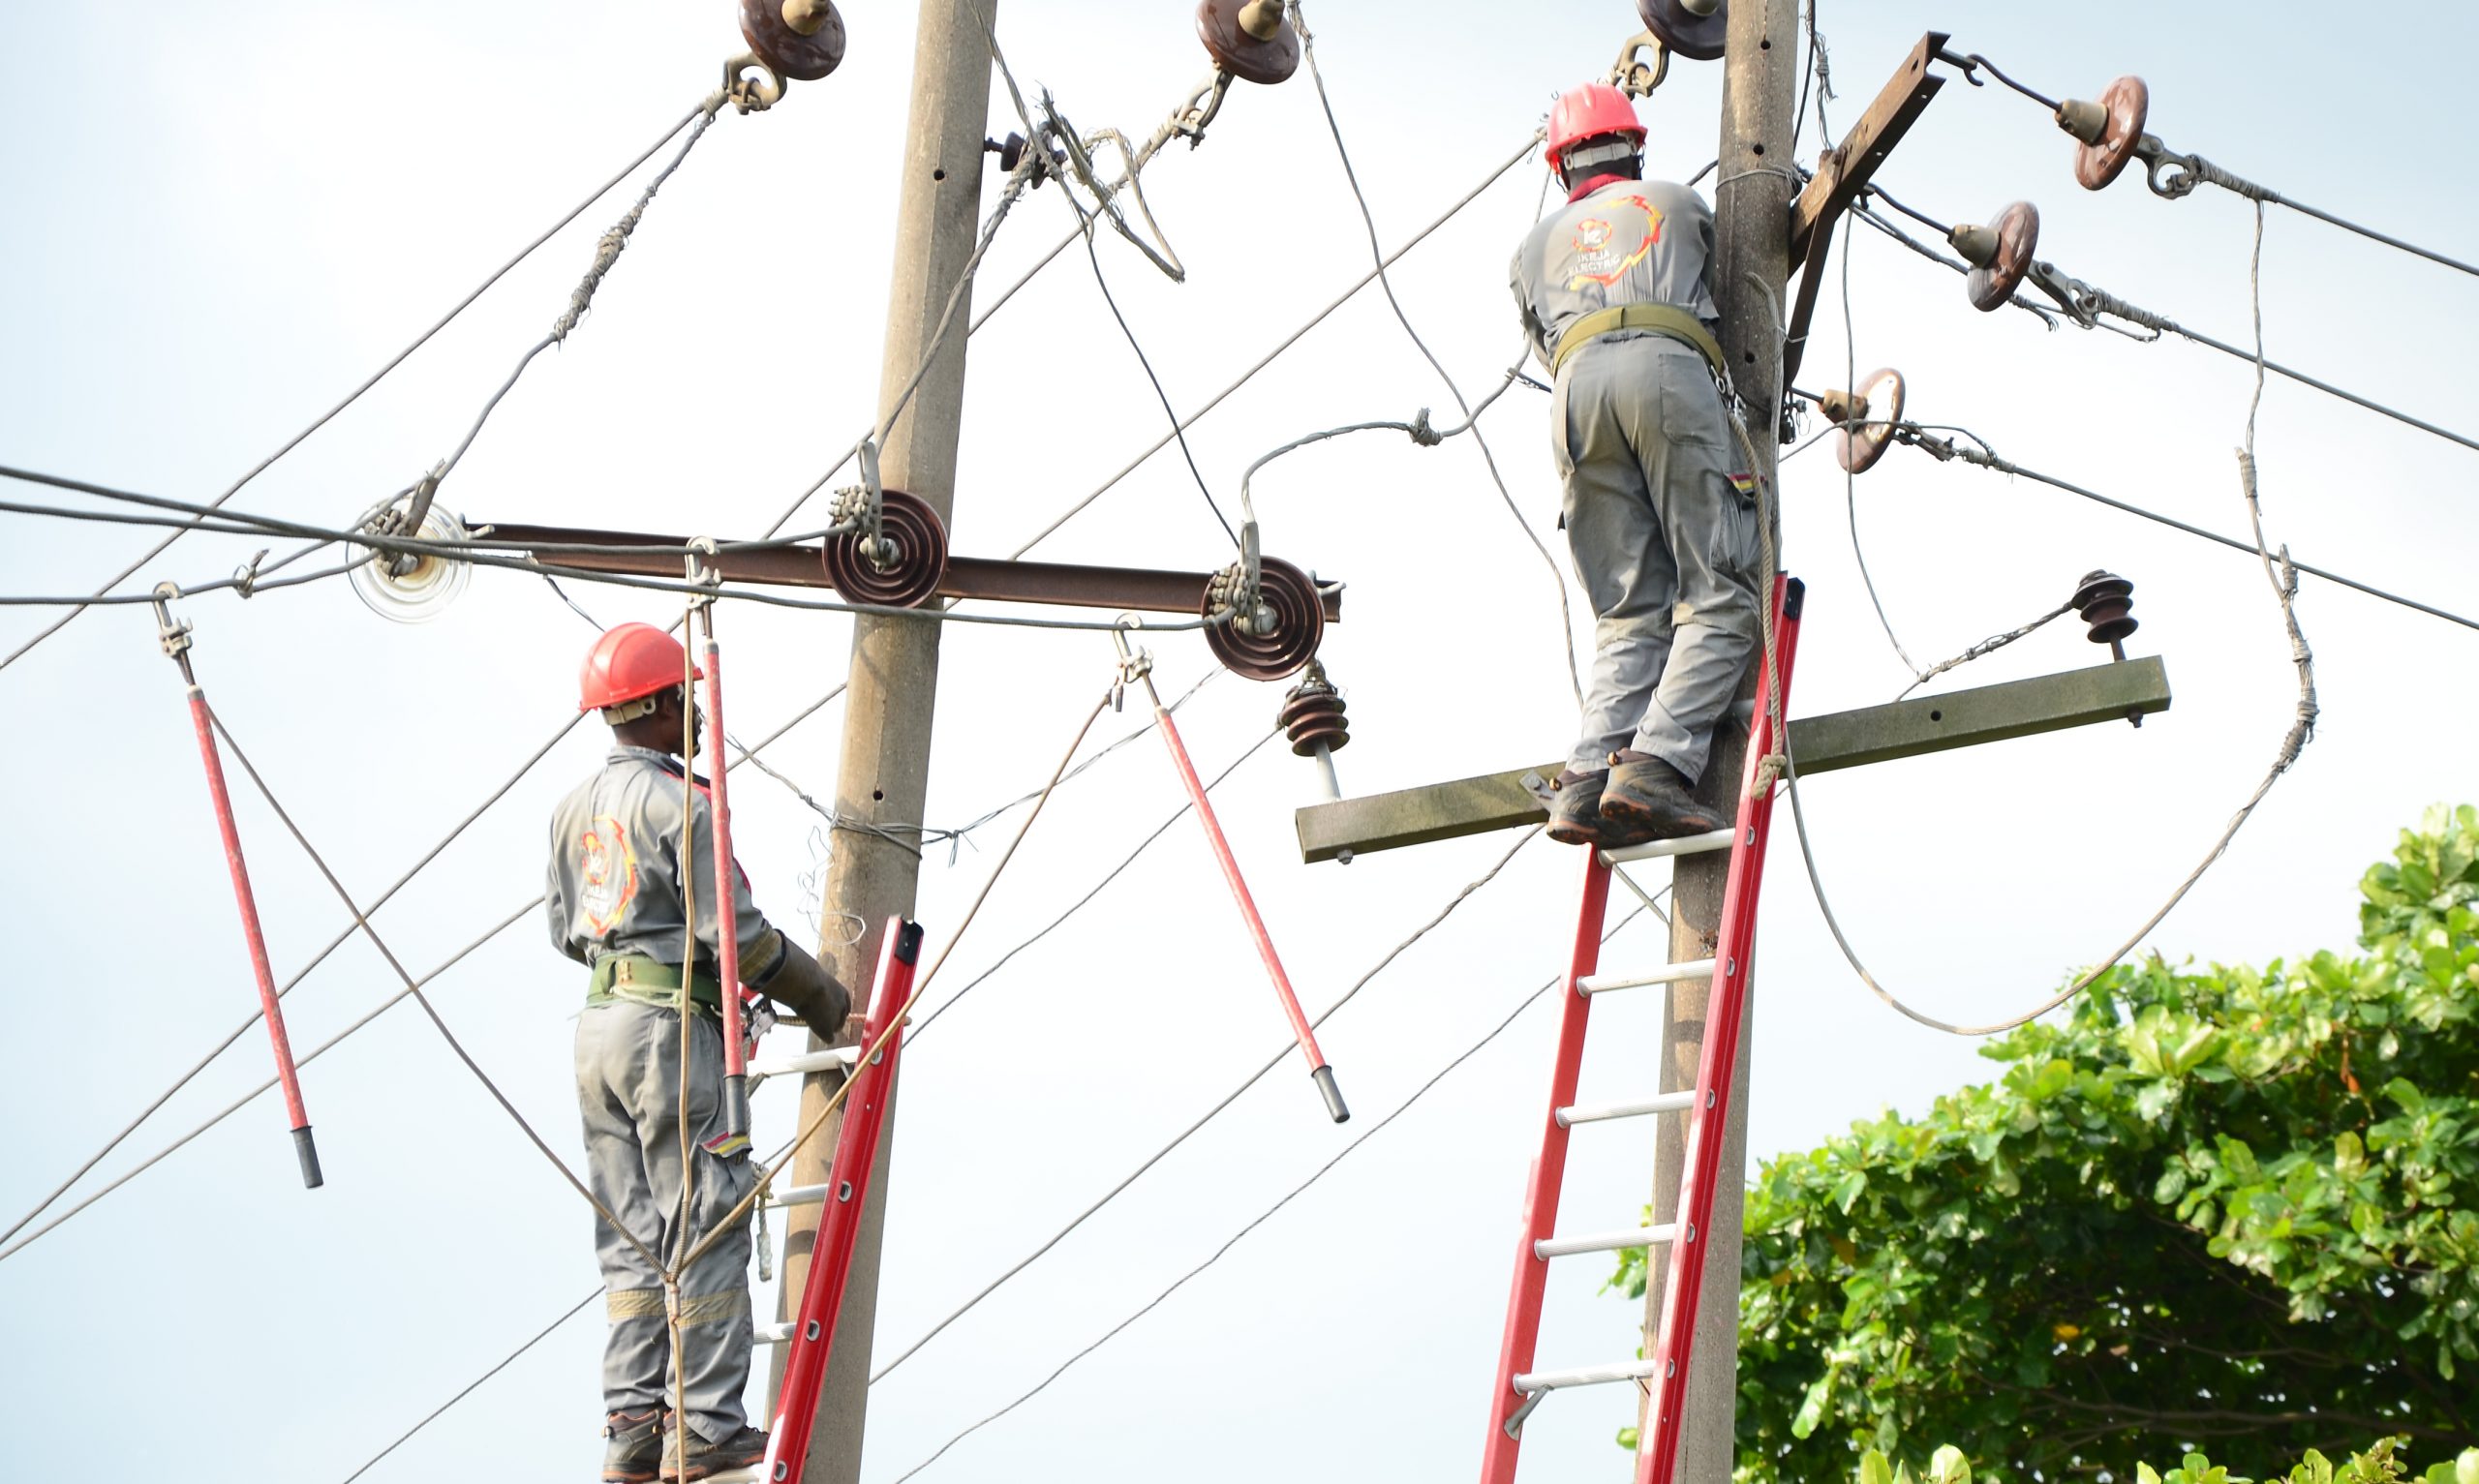 الكهرباء في نيجيريا